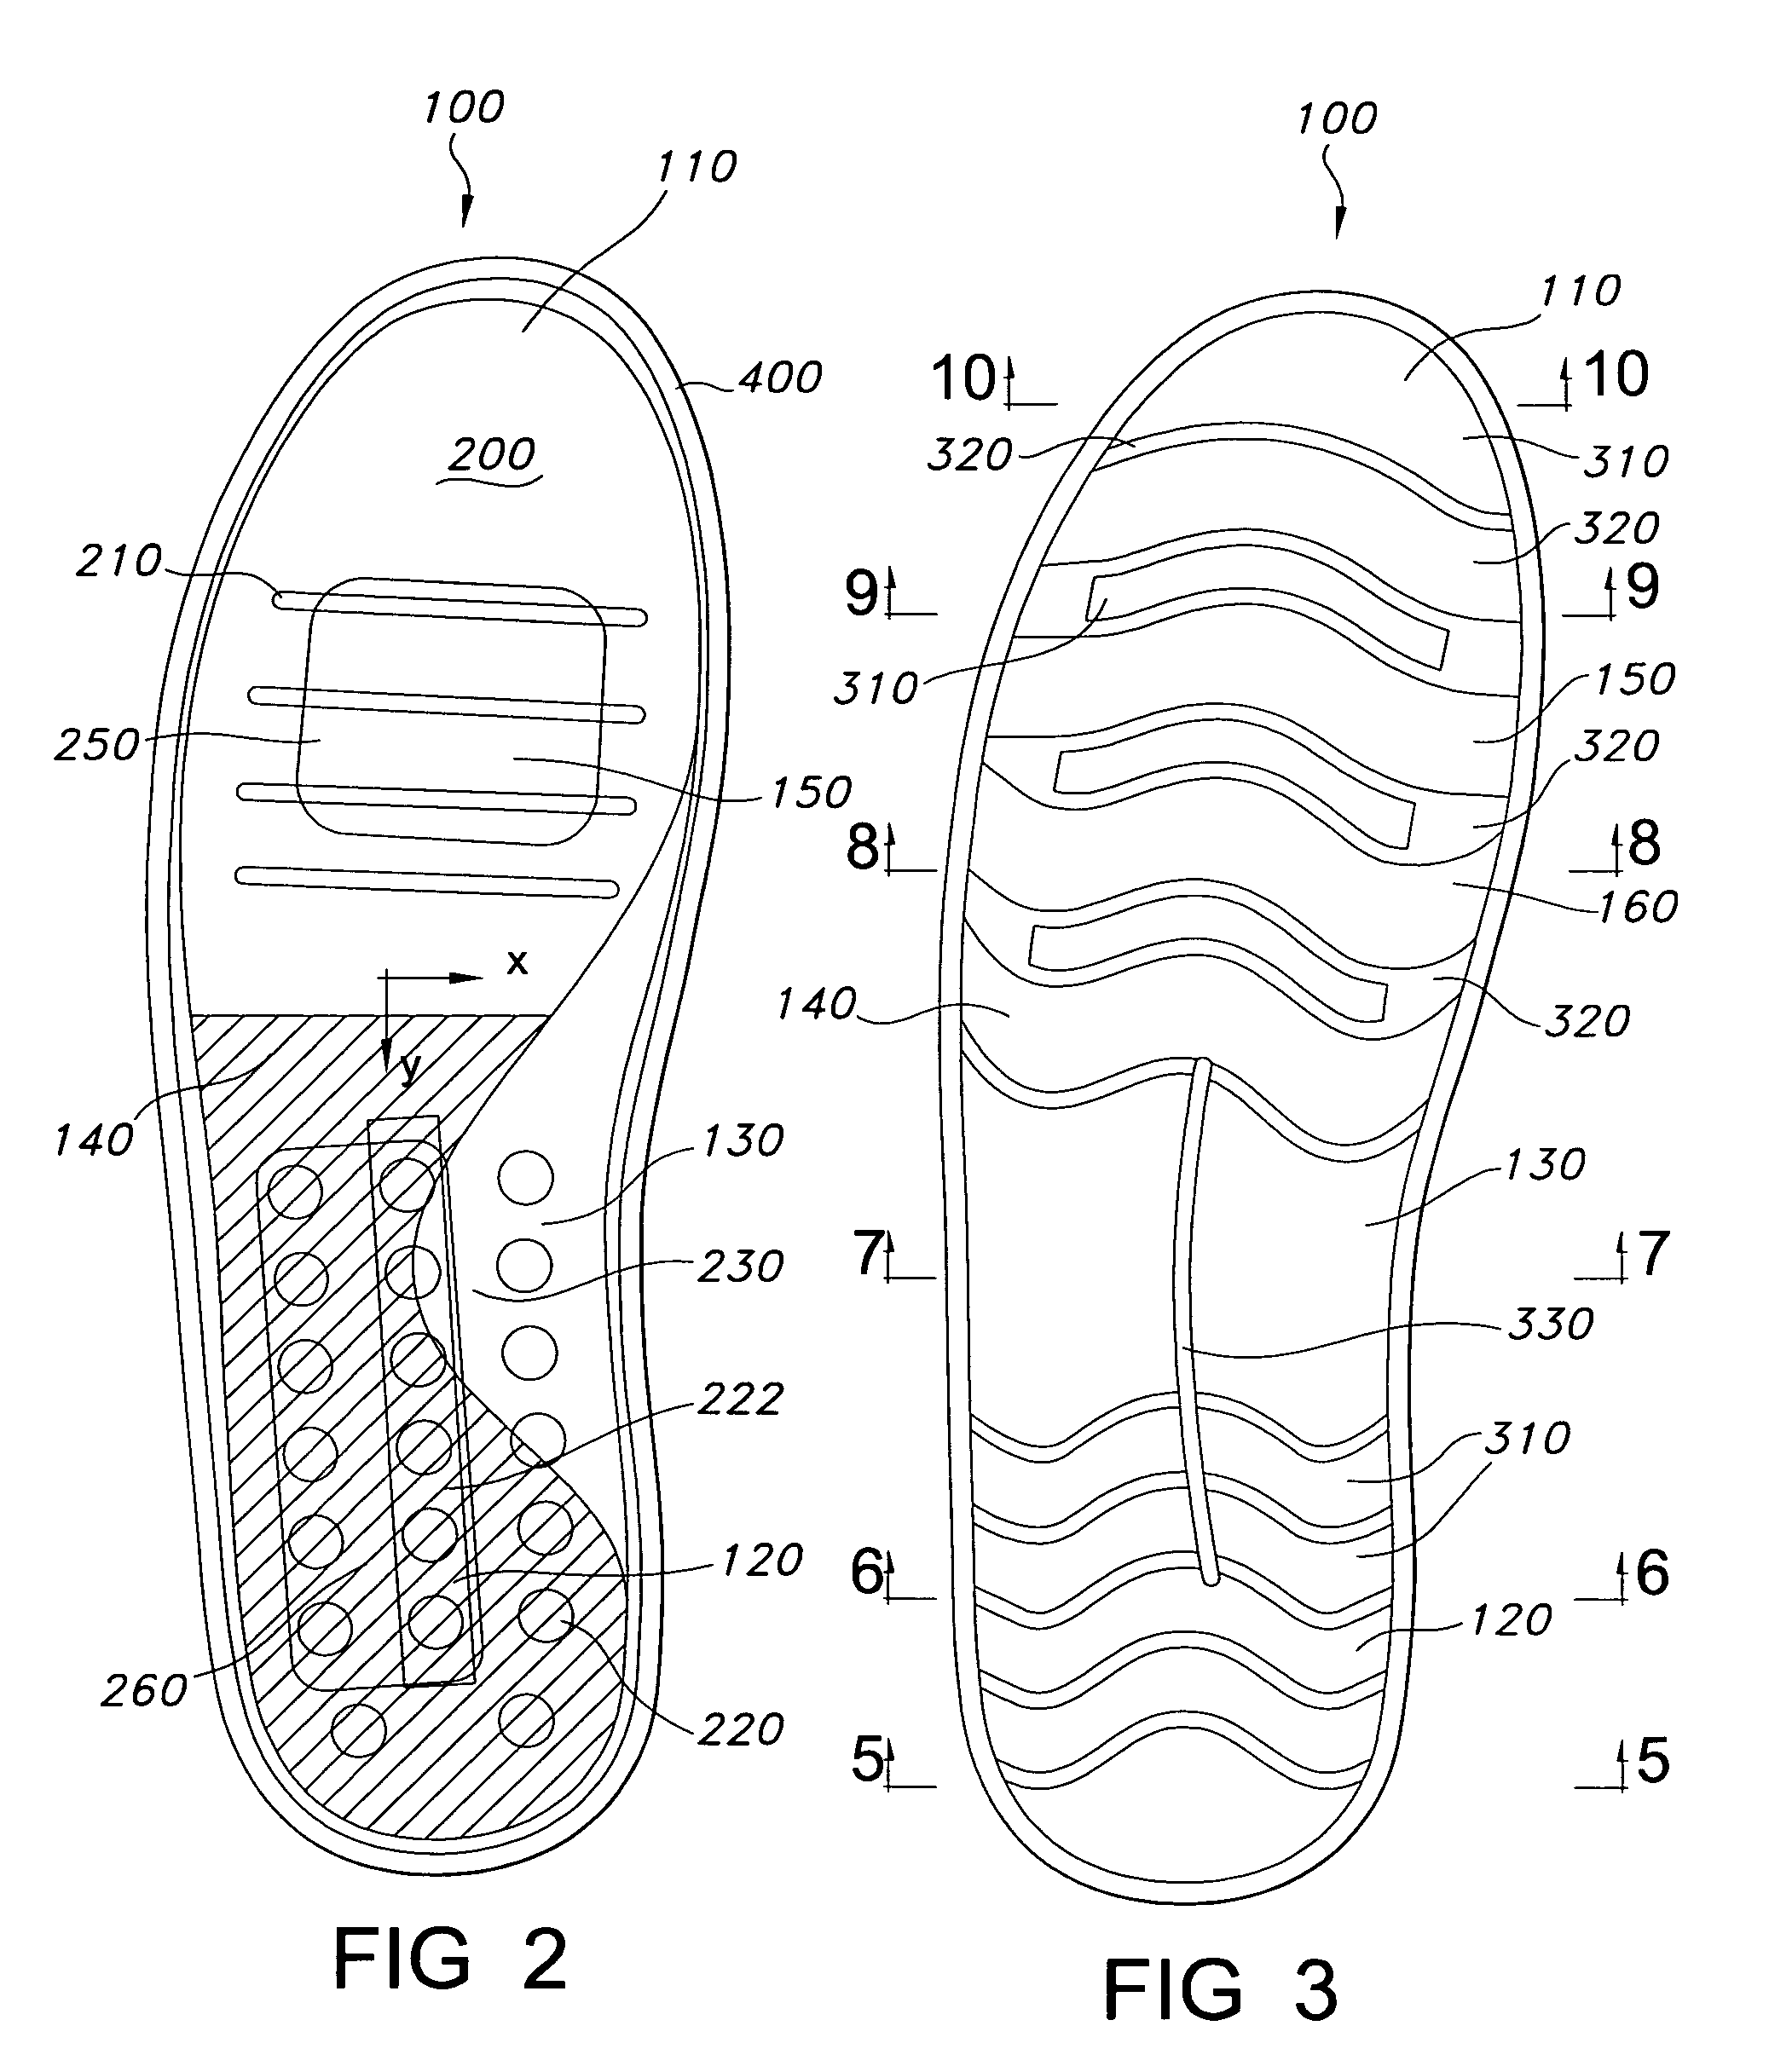 Shoe sole